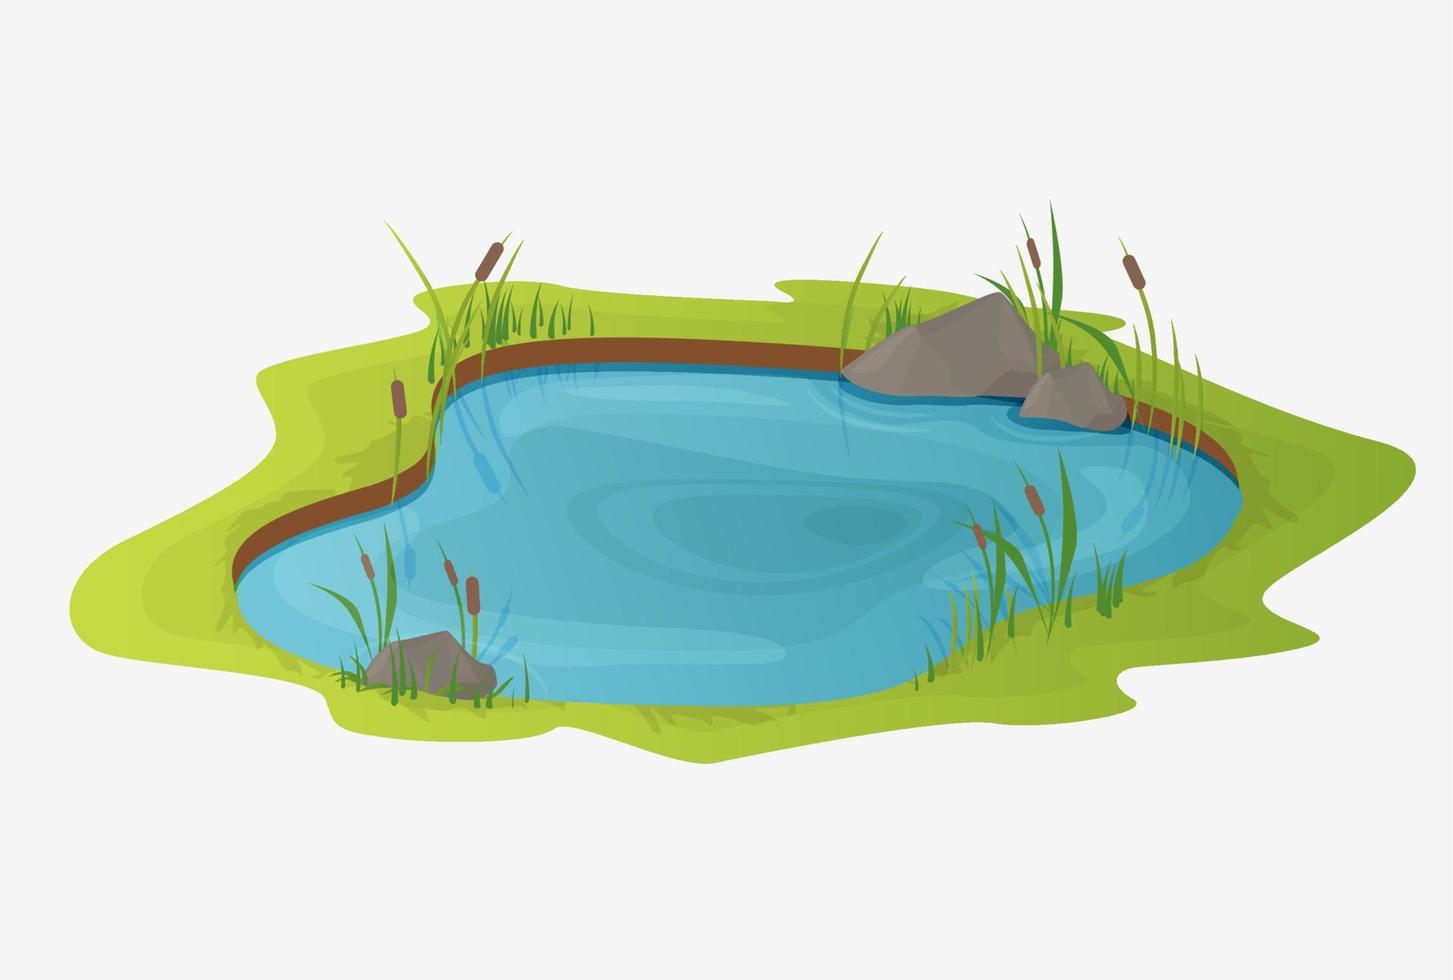 estanque de agua pintoresco con juncos. el concepto de un pequeño lago pantanoso abierto en un estilo de paisaje natural. diseño natural natural en un hermoso color, rural, ilustración de estilo rural. vector